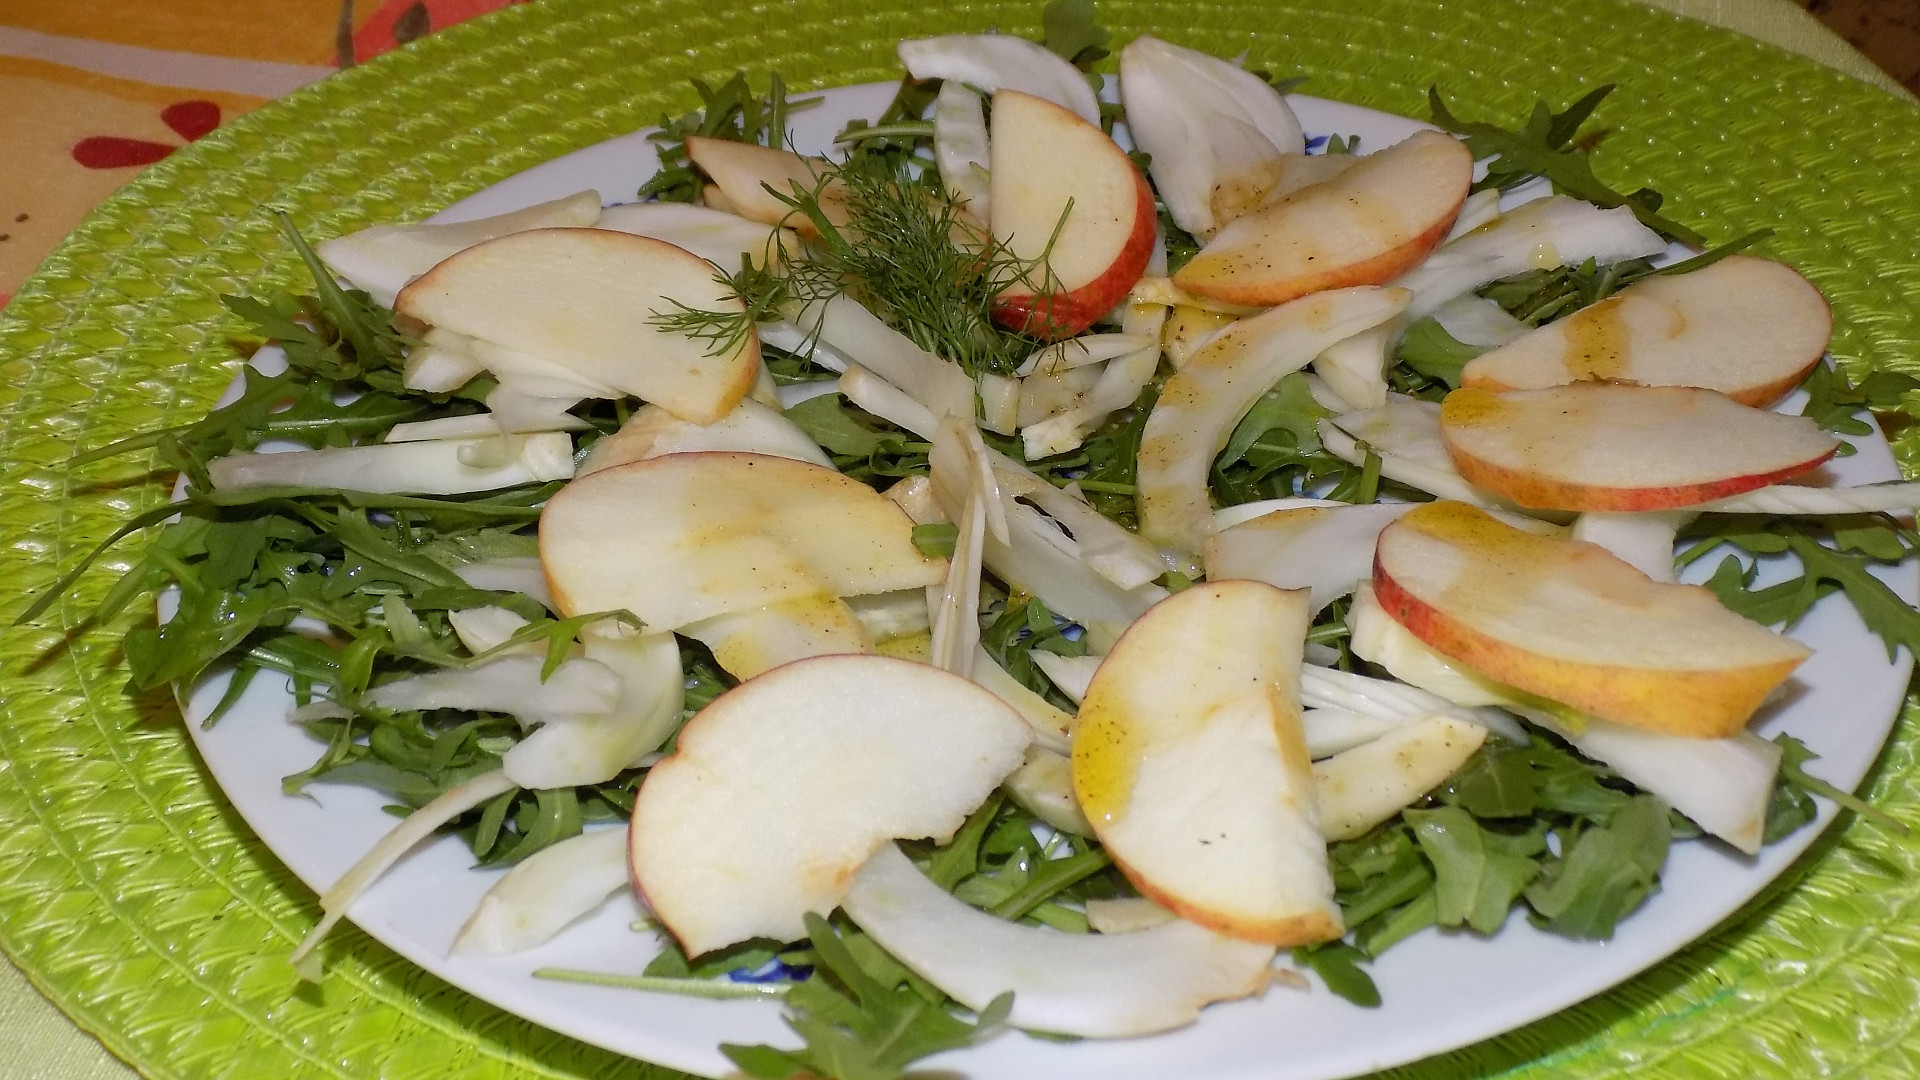 Jablkovo-fenyklový salát